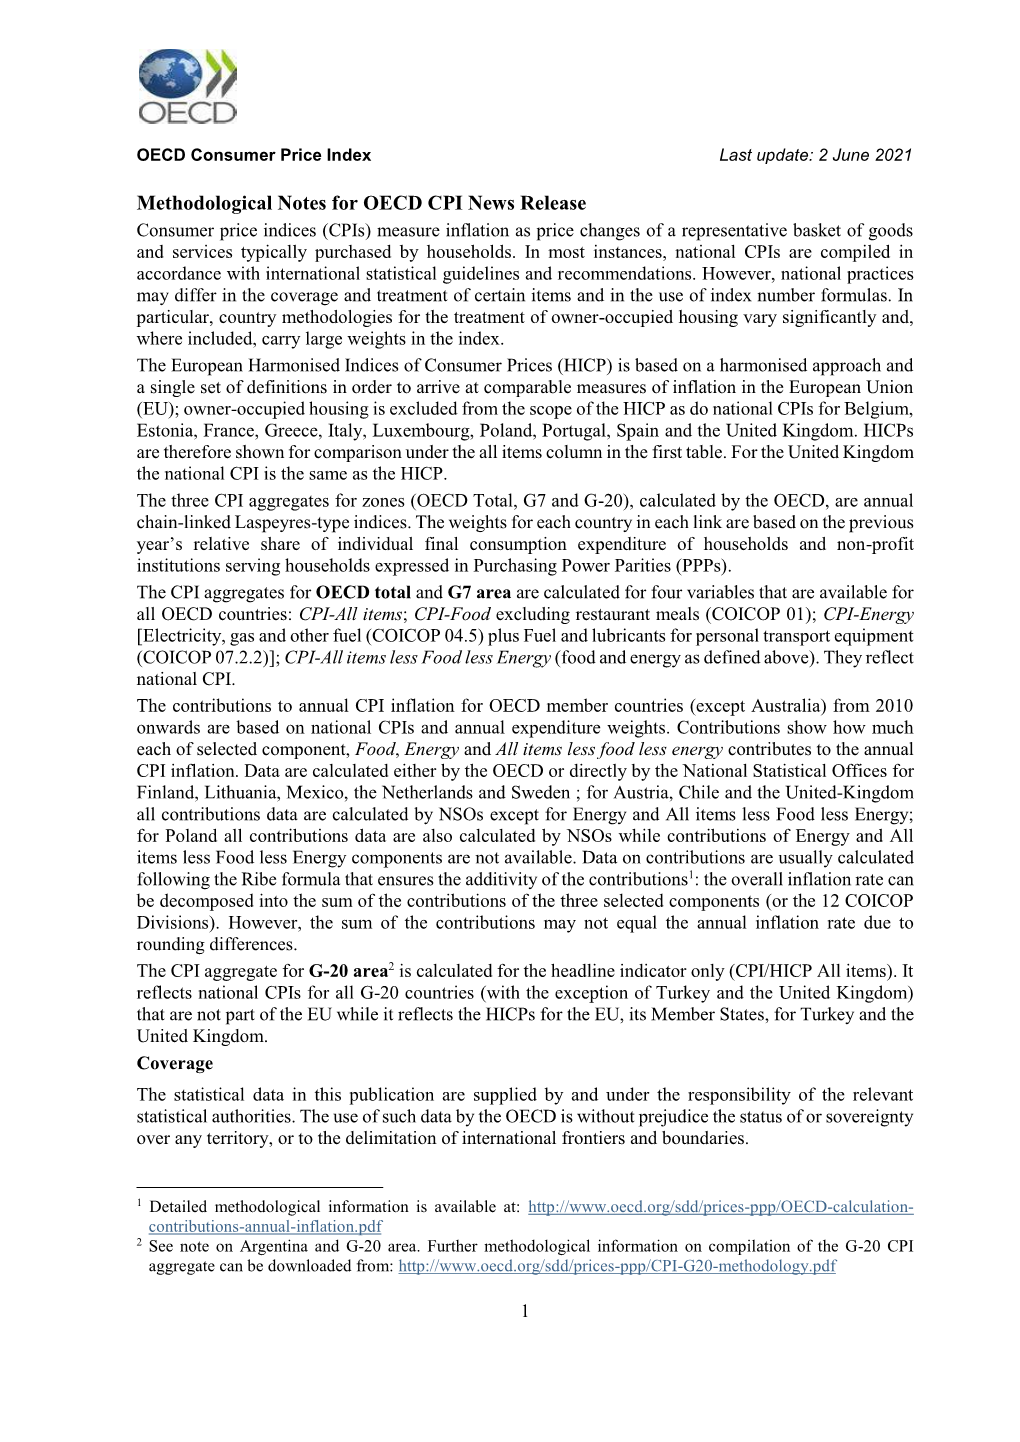 Methodological Notes for OECD CPI News Release